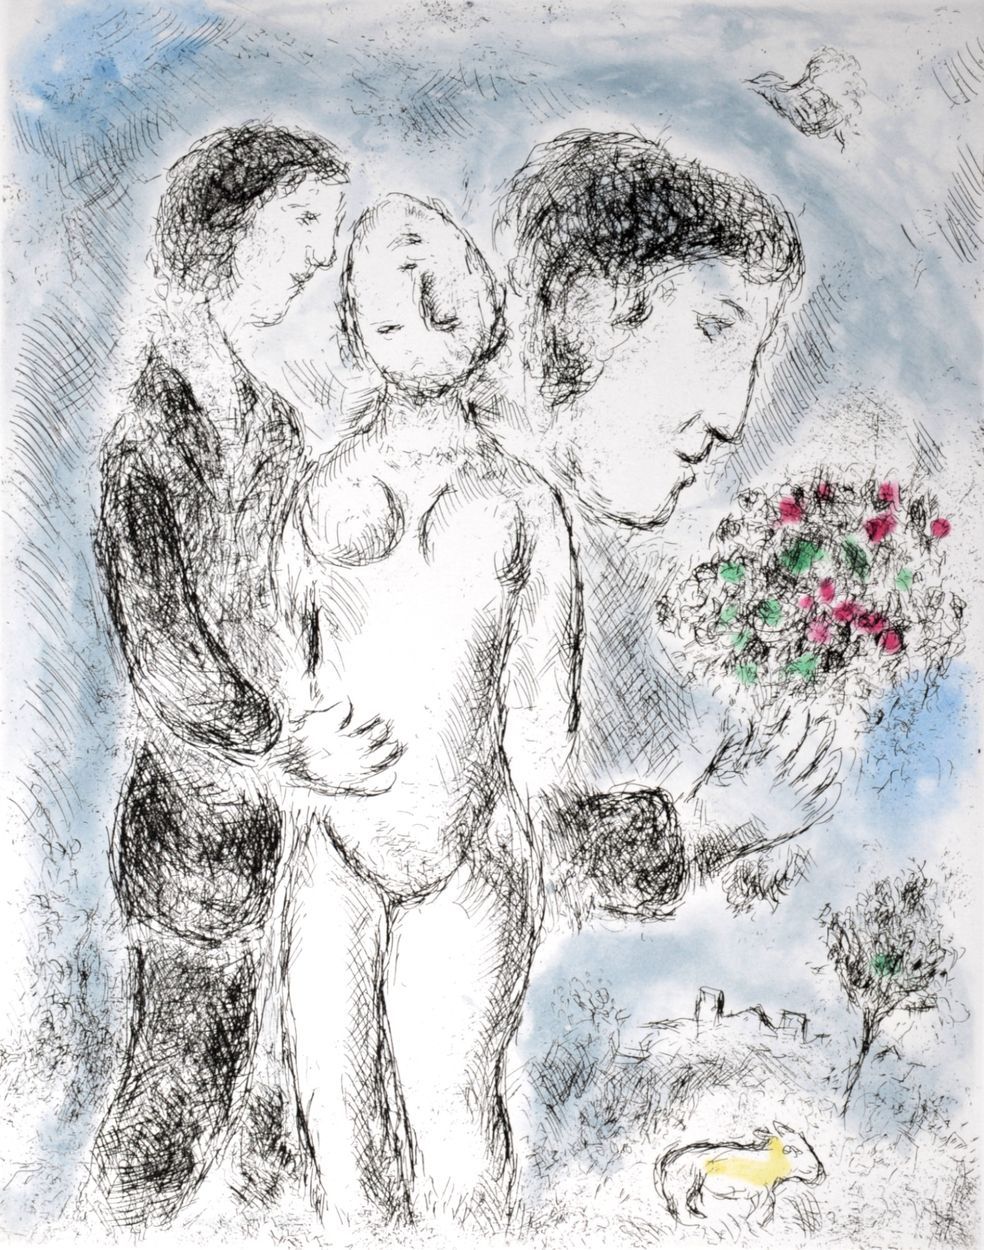 Marc Chagall 马克-夏加尔 (1887-1985)

说者无意，听者有心，1976年

原始蚀刻画（蚀刻和水印），在Vélin de Rives纸上&hellip;